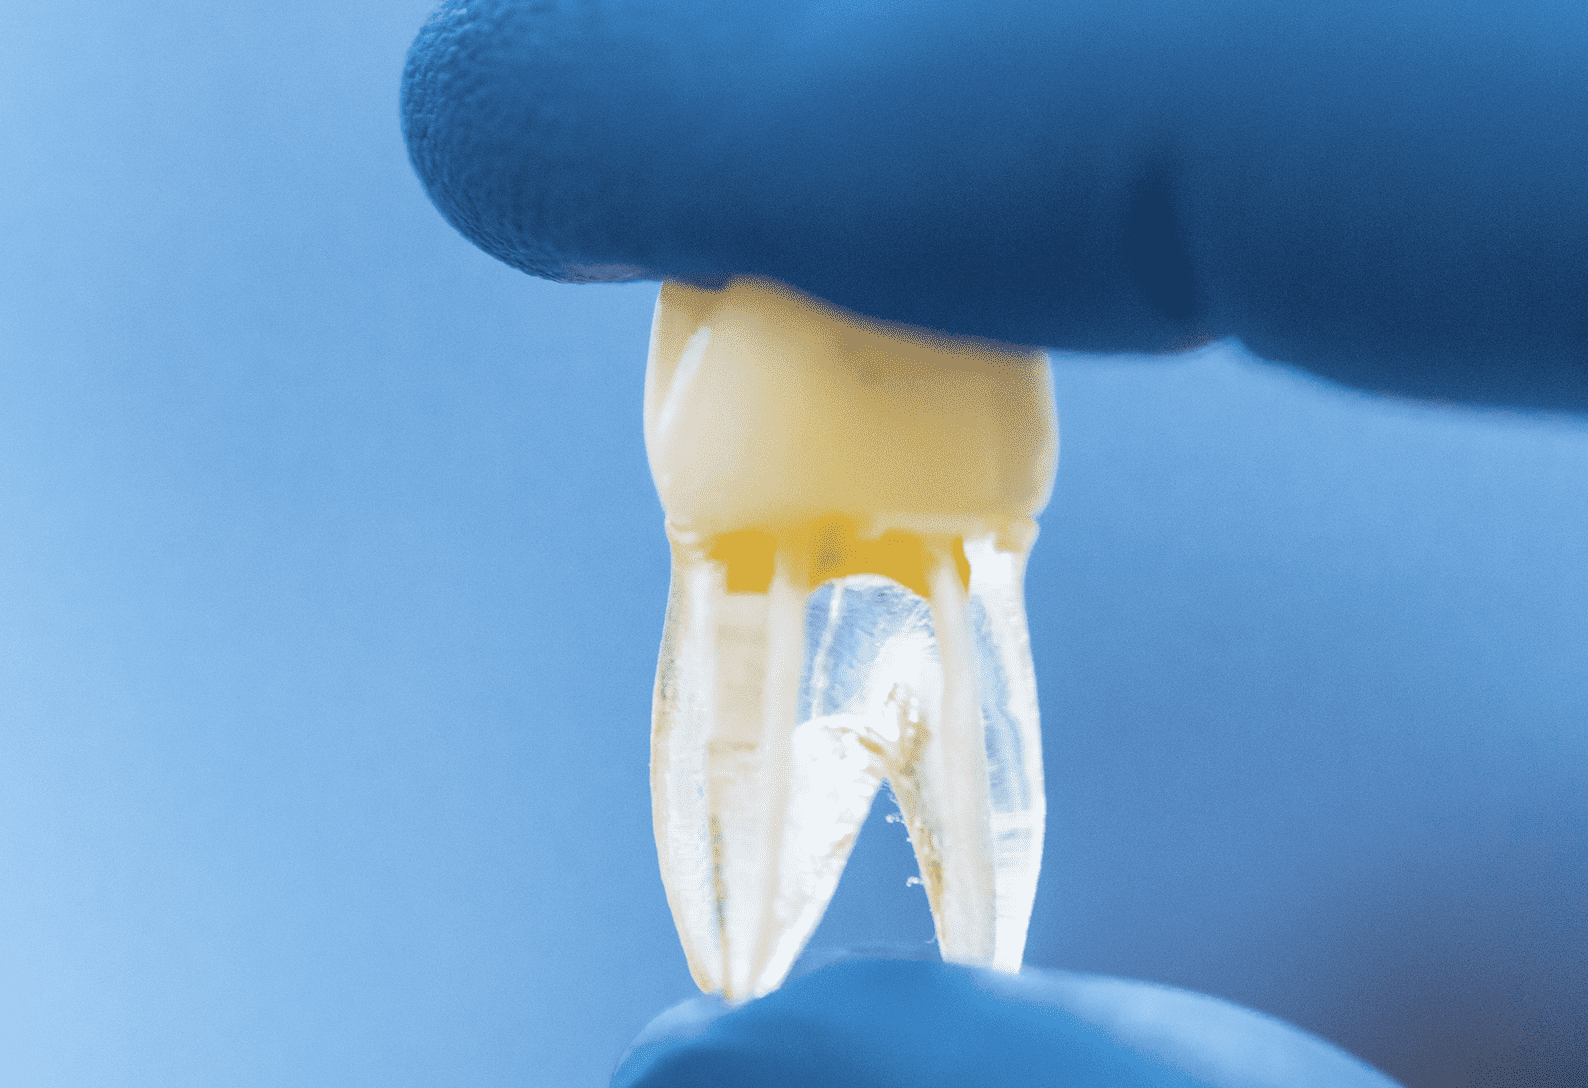 فيزيتا مجانية | 6 عادات خاطئة قد تدمر أسنانك بحسب خبراء طب الاسنان